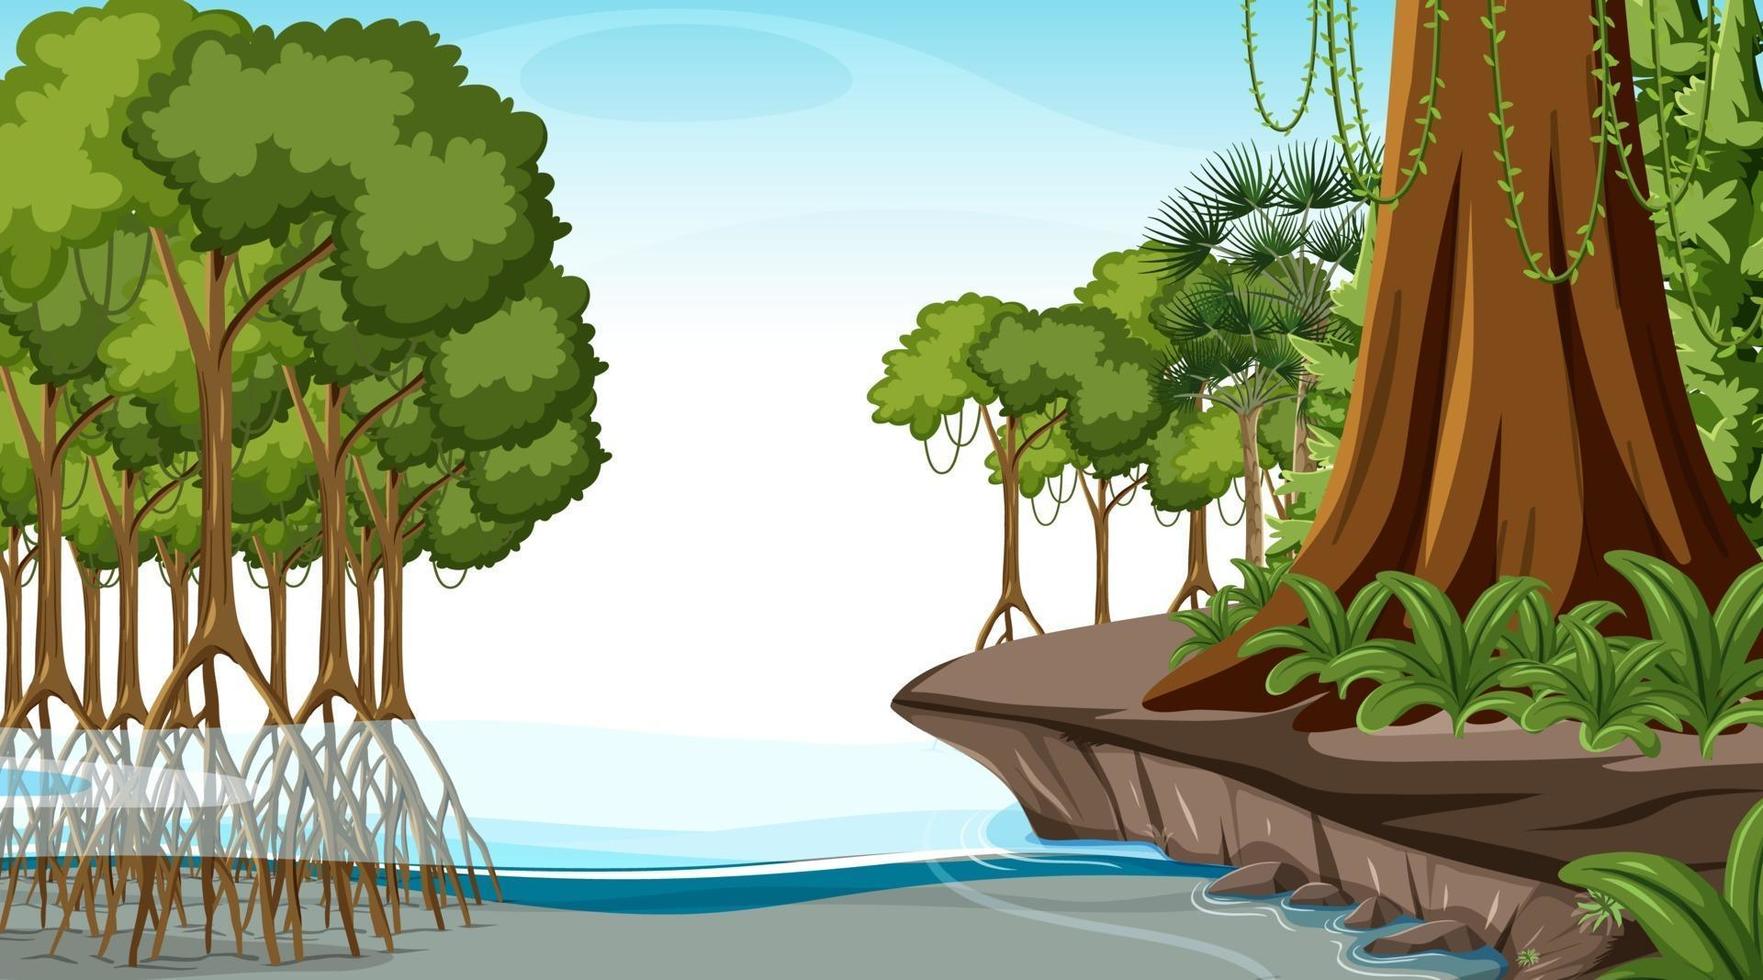 cena da natureza com floresta de mangue durante o dia em estilo cartoon vetor